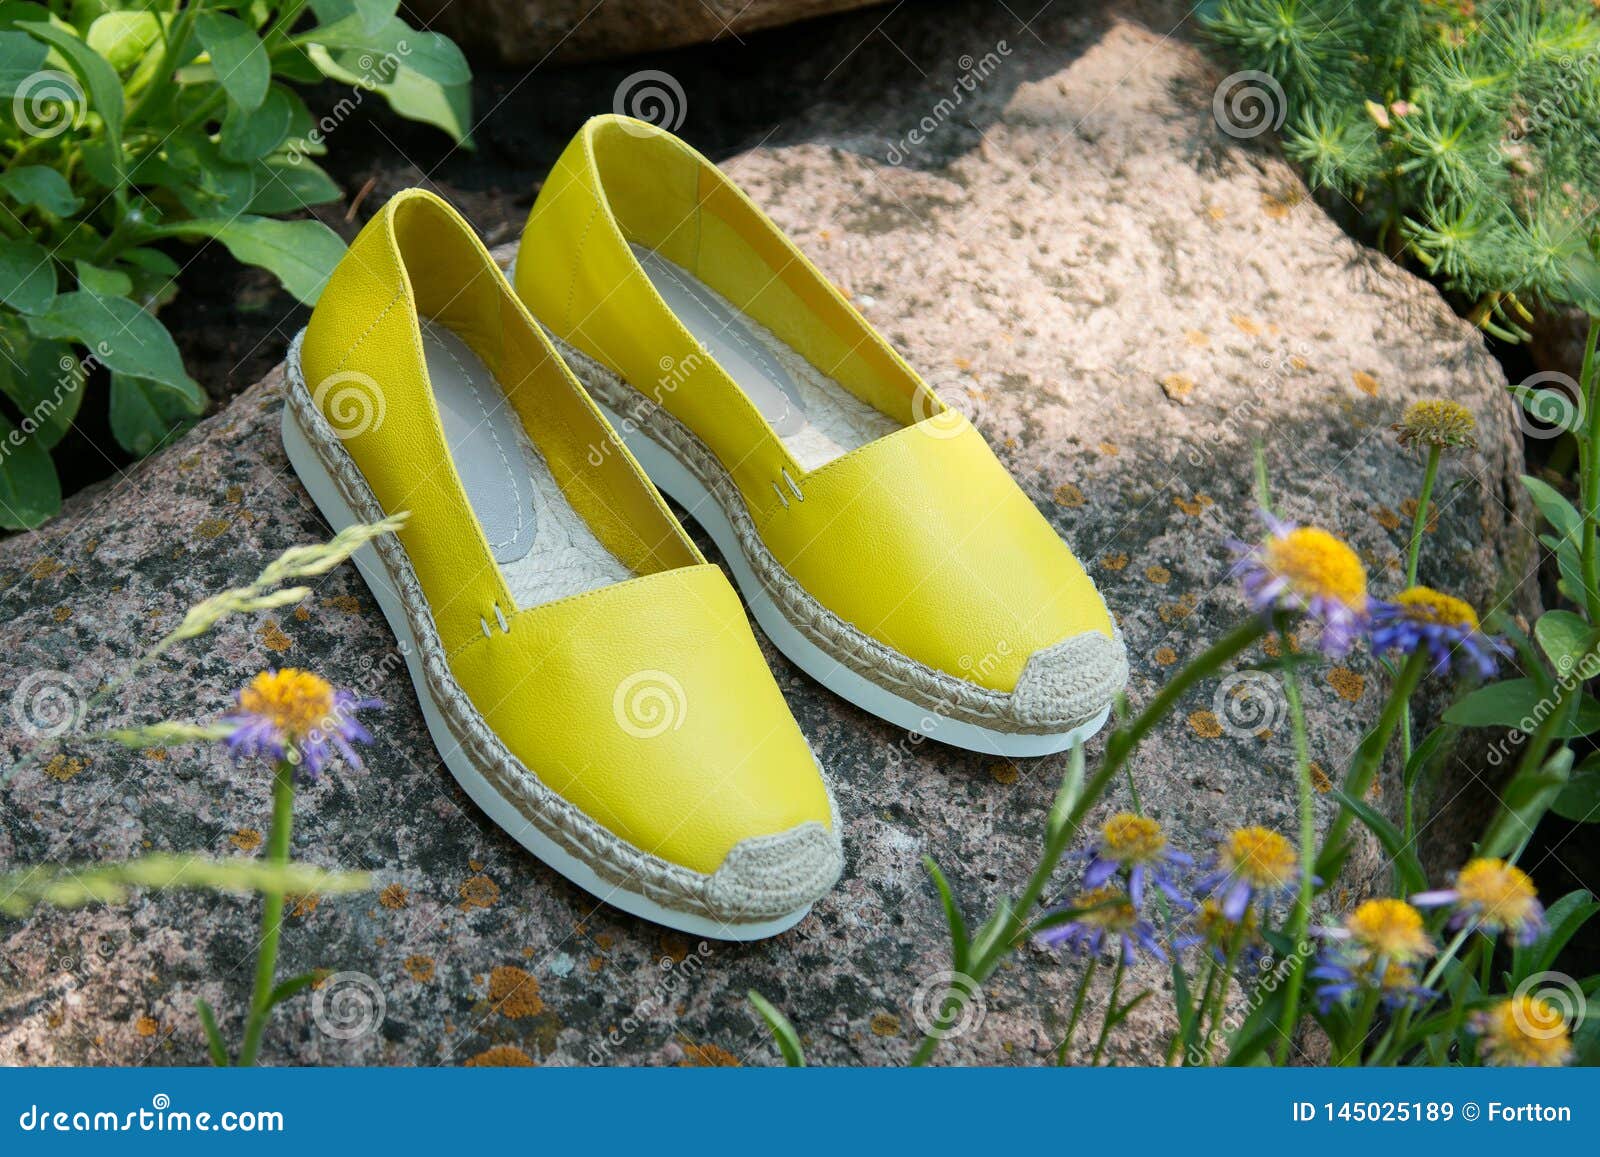 lommelygter Brokke sig sammentrækning Yellow Espadrilles Close Up. Summer Footwear Stock Image - Image of shoes,  casual: 145025189